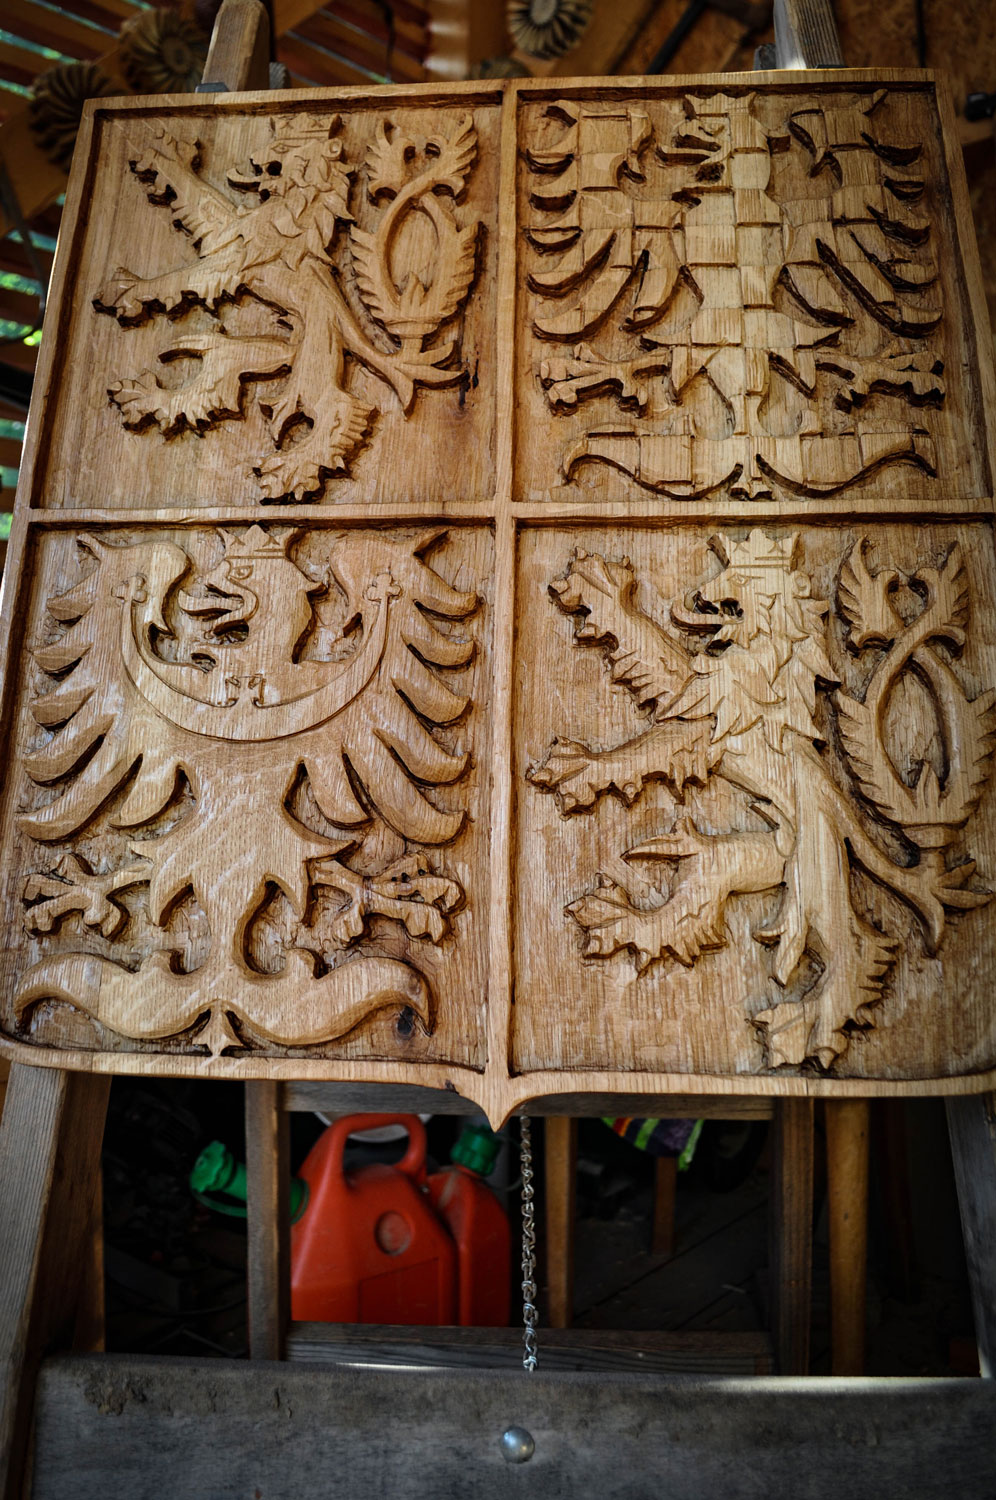 drevorezba-vyrezavani-carving-wood-drevo-socha-znak-erb-emblem-radekzdrazil-20210623-06